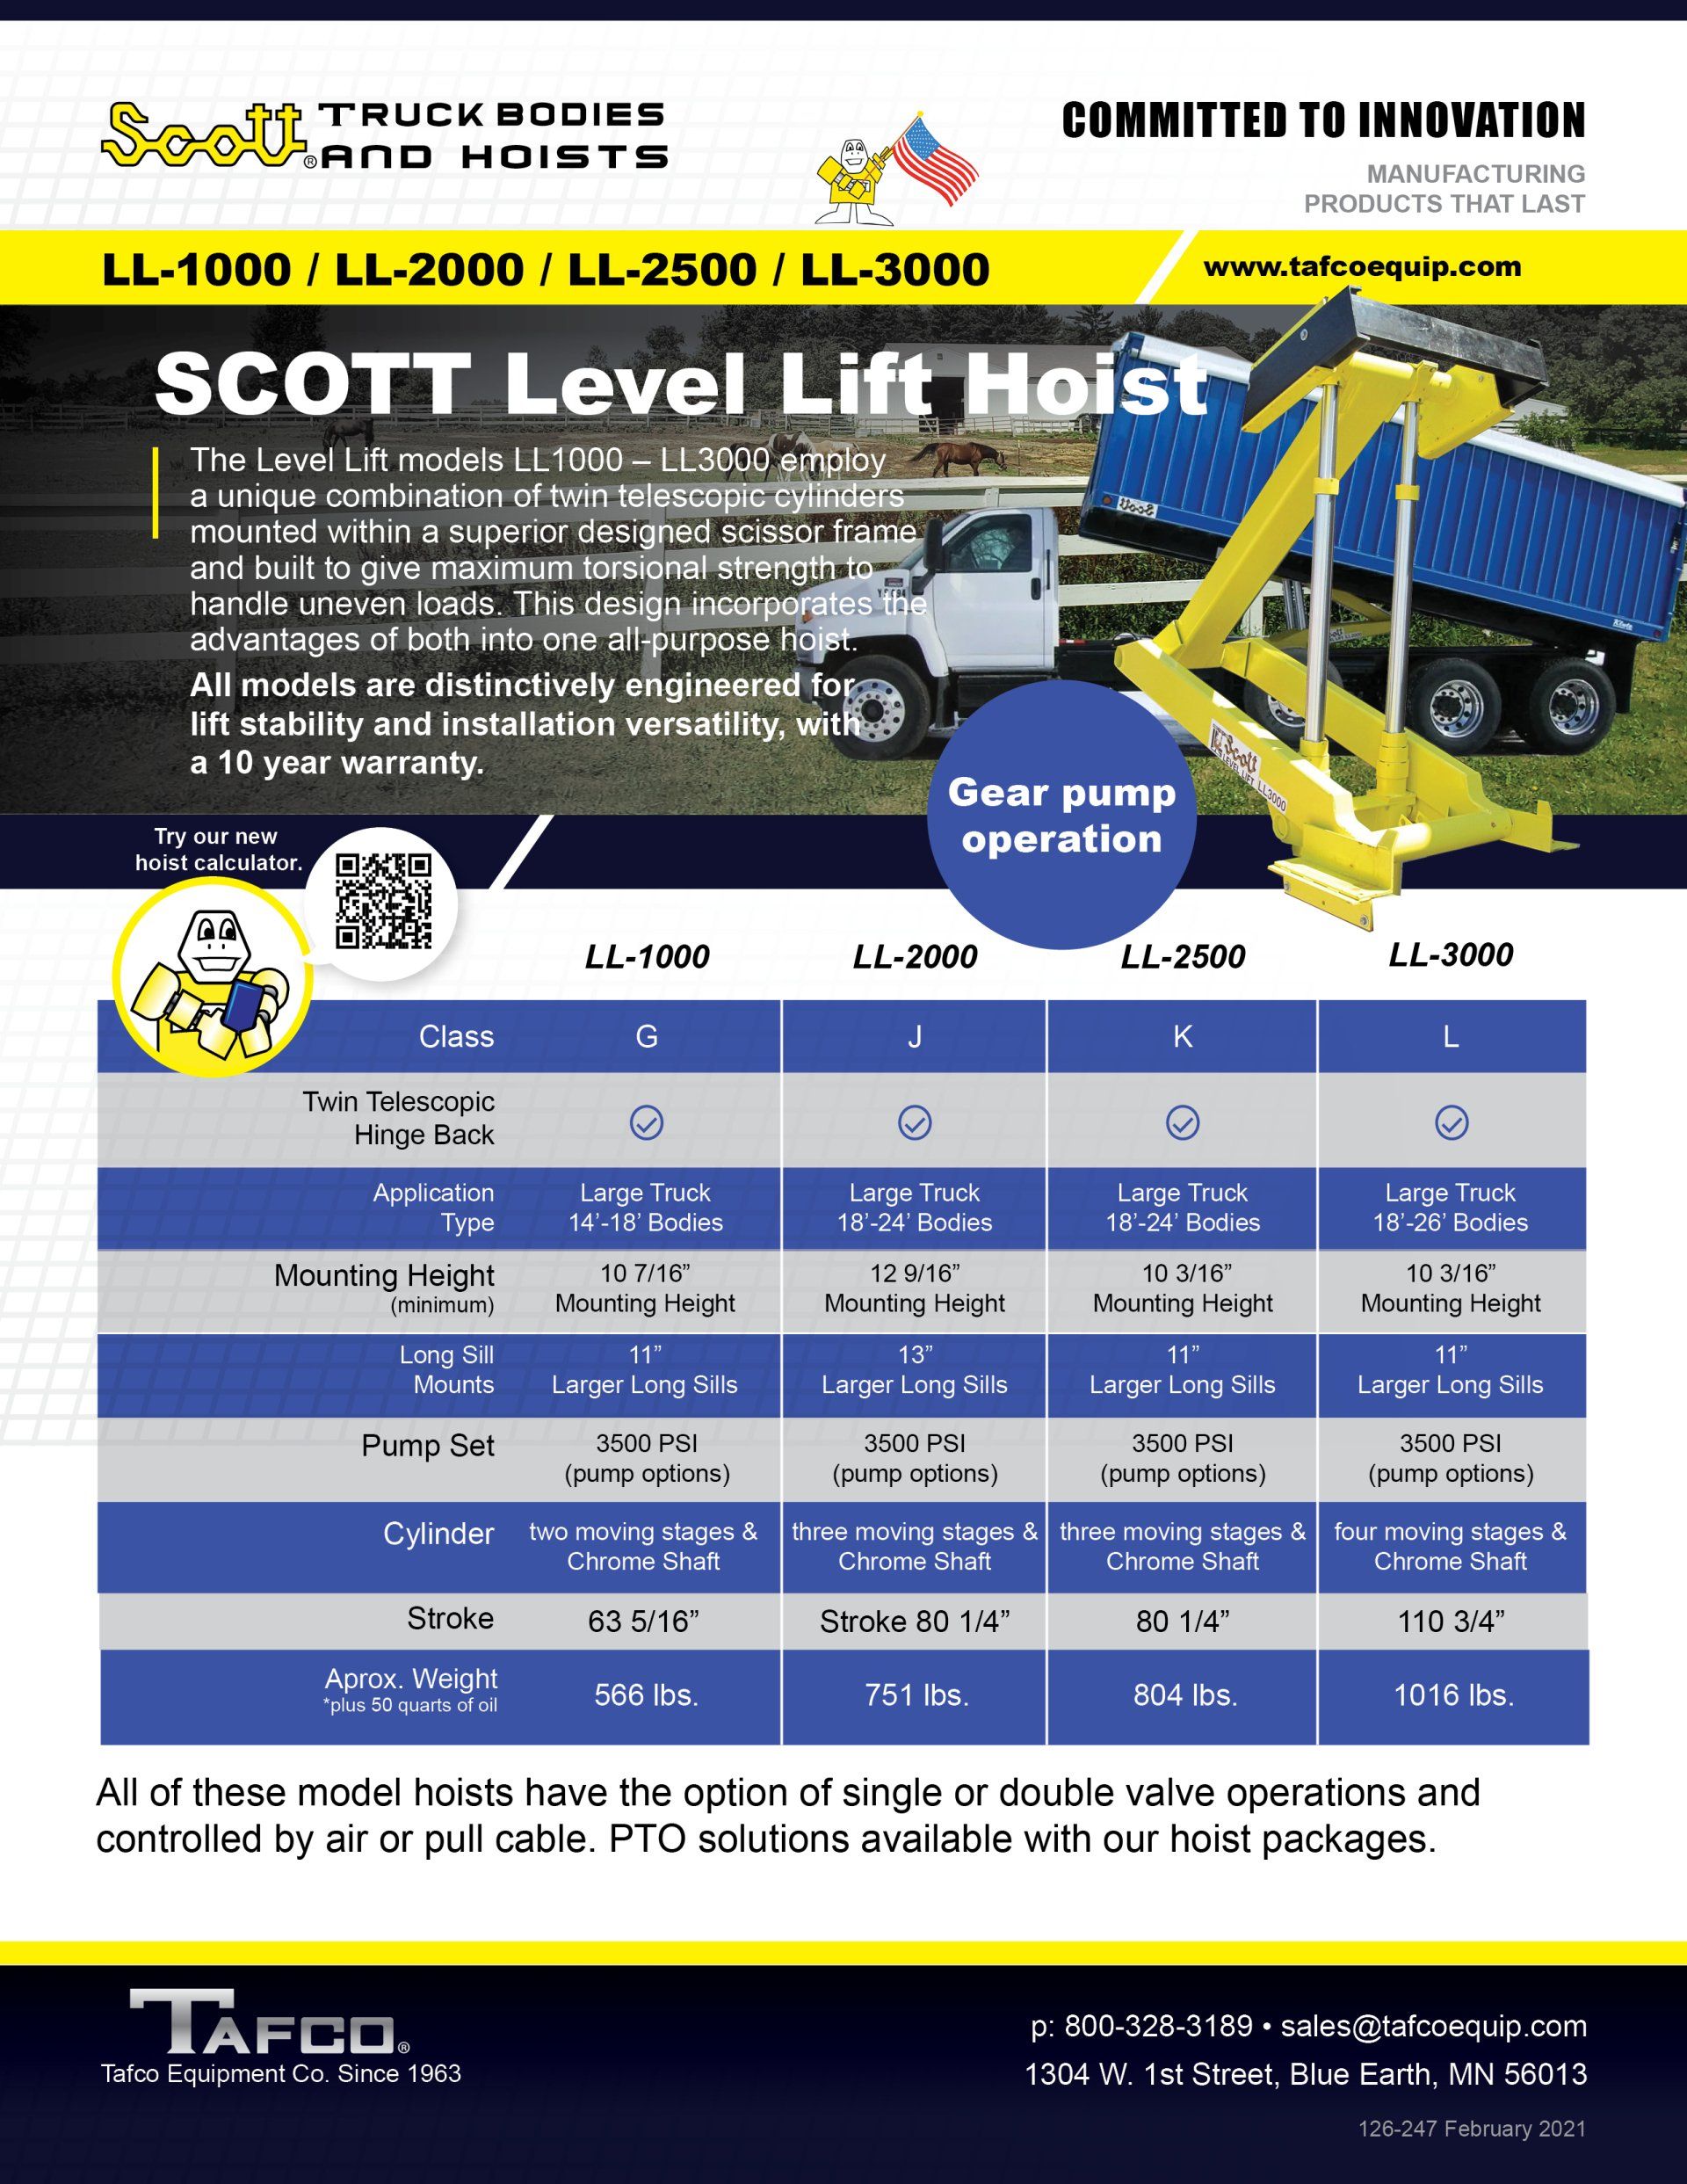 Scott Level Lift Hoist Brochure LL-1000 to LL-3000